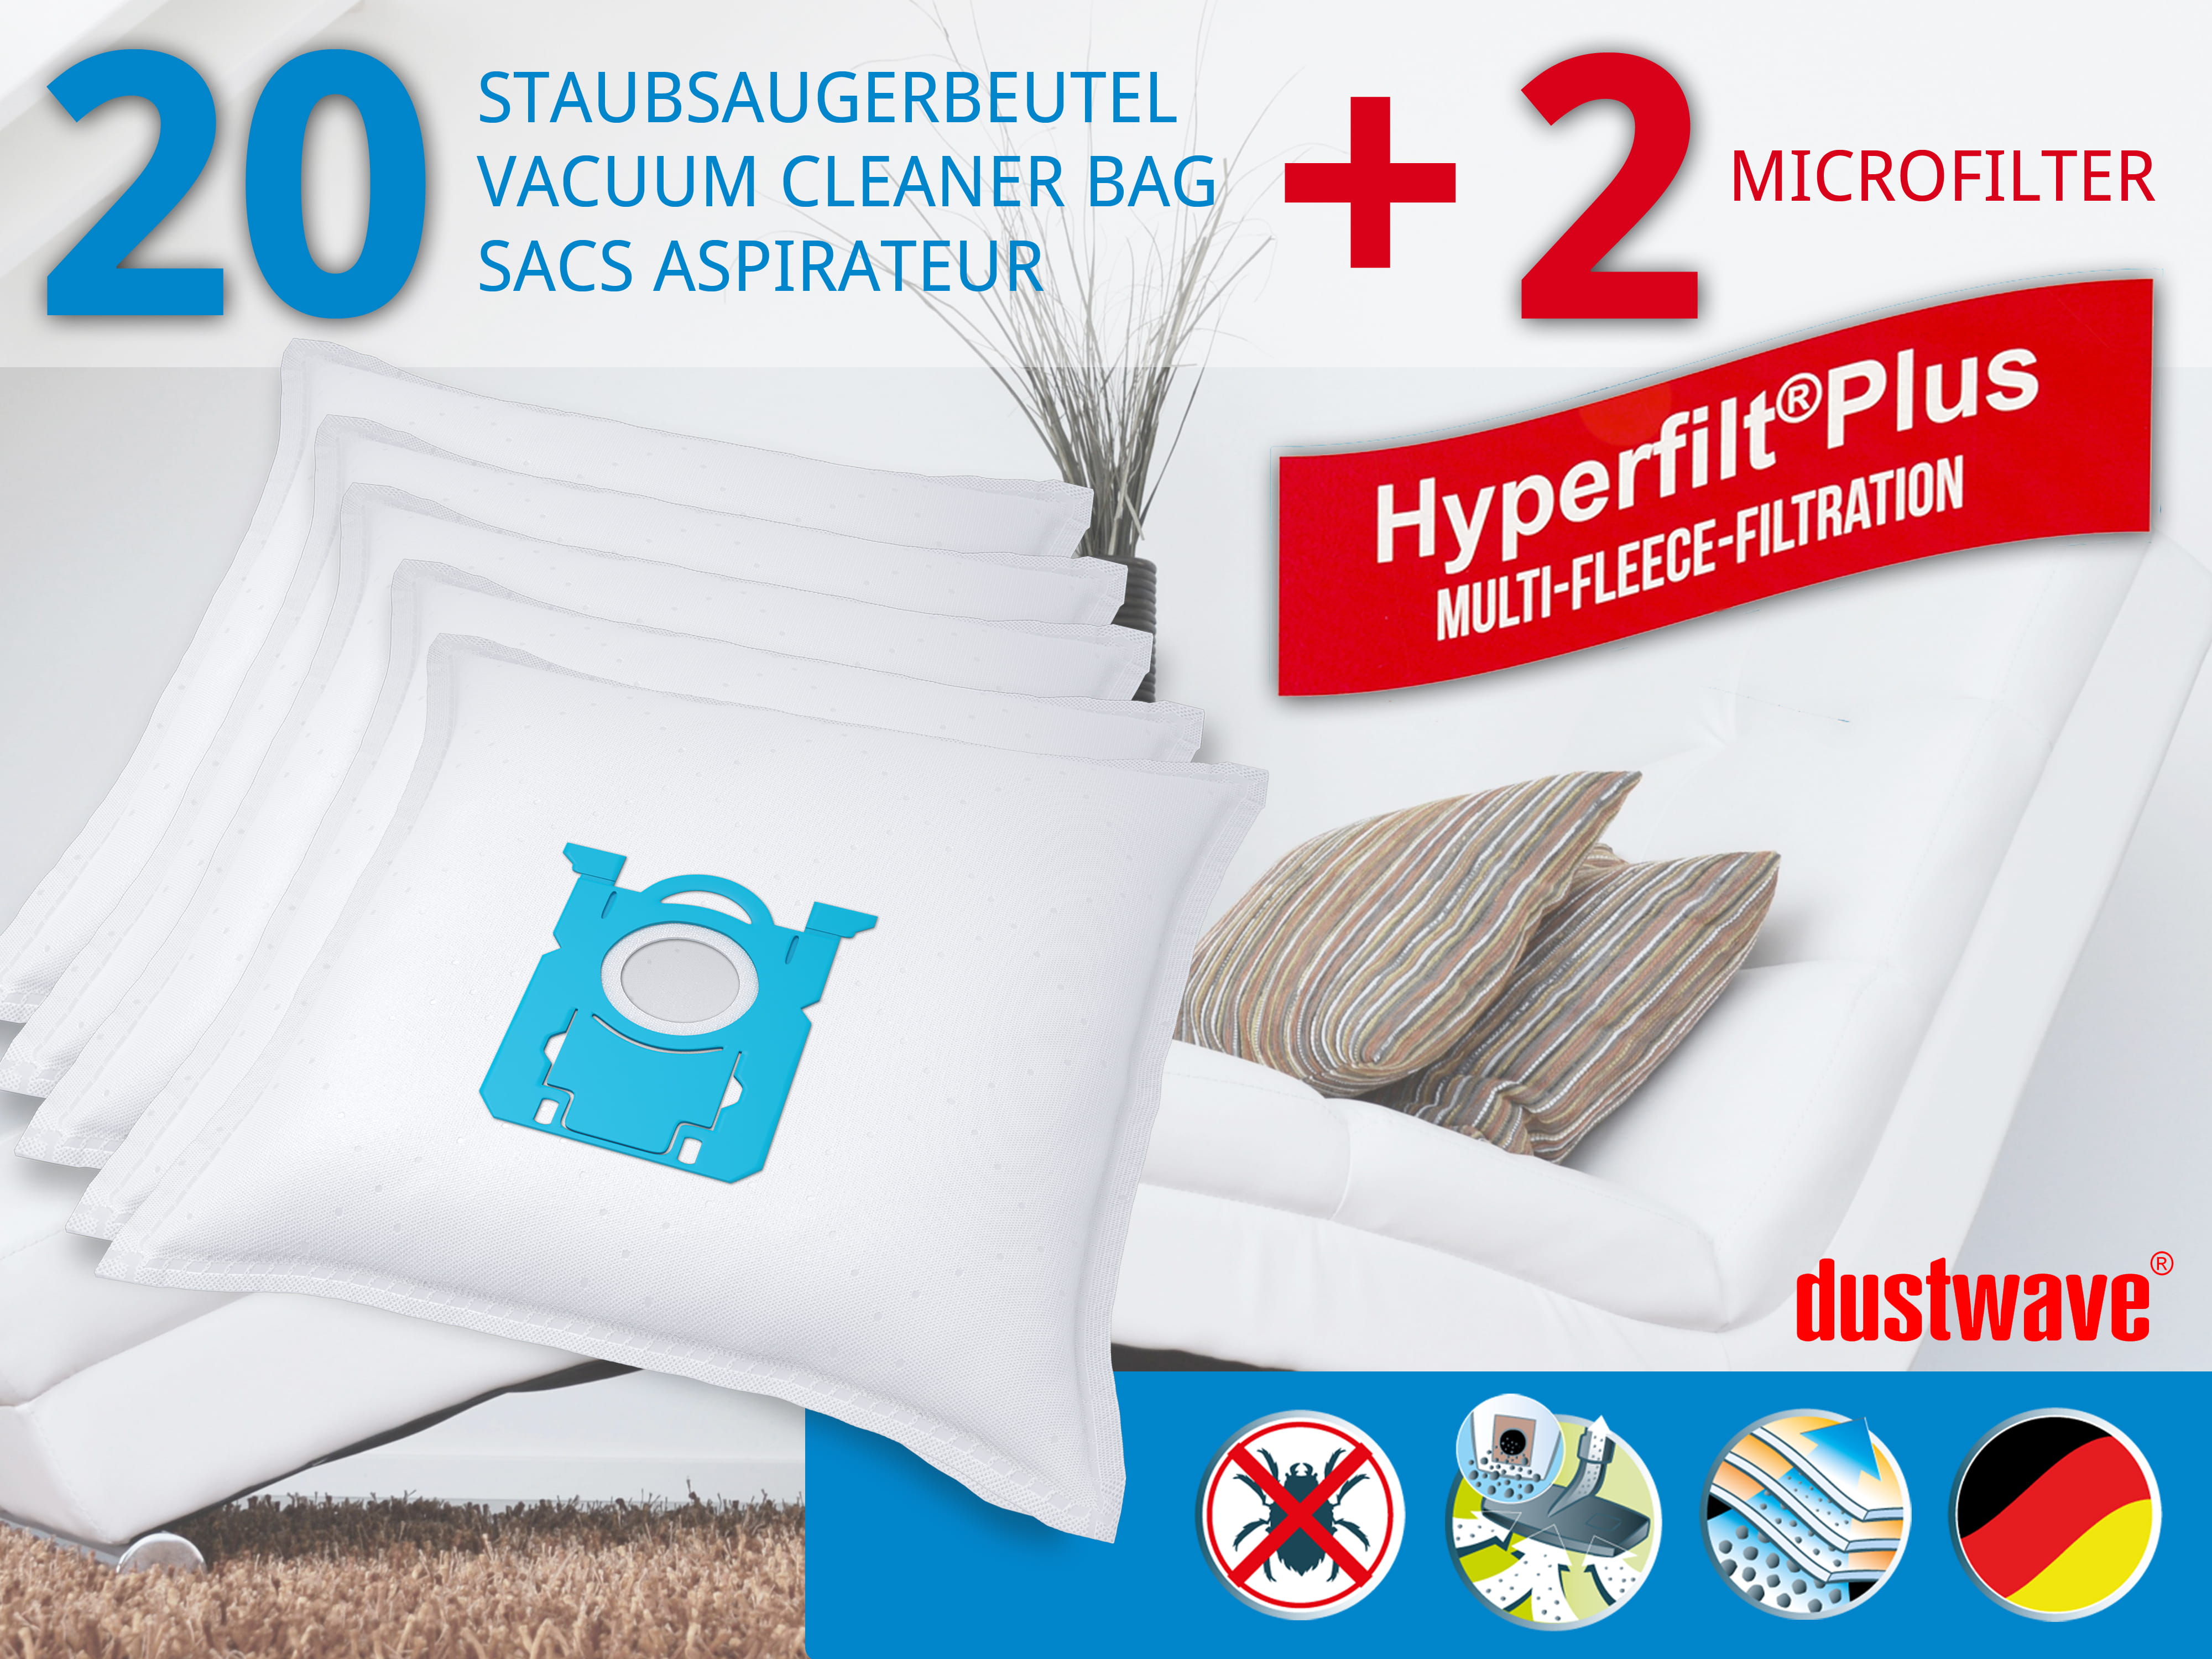 Sparpack - 10 Staubsaugerbeutel passend für Aqua Vac (Shop Vac) - Hobby 33, 36 Kesselsauger (30 Liter) - dustwave® Premiumqualität - Made in Germany